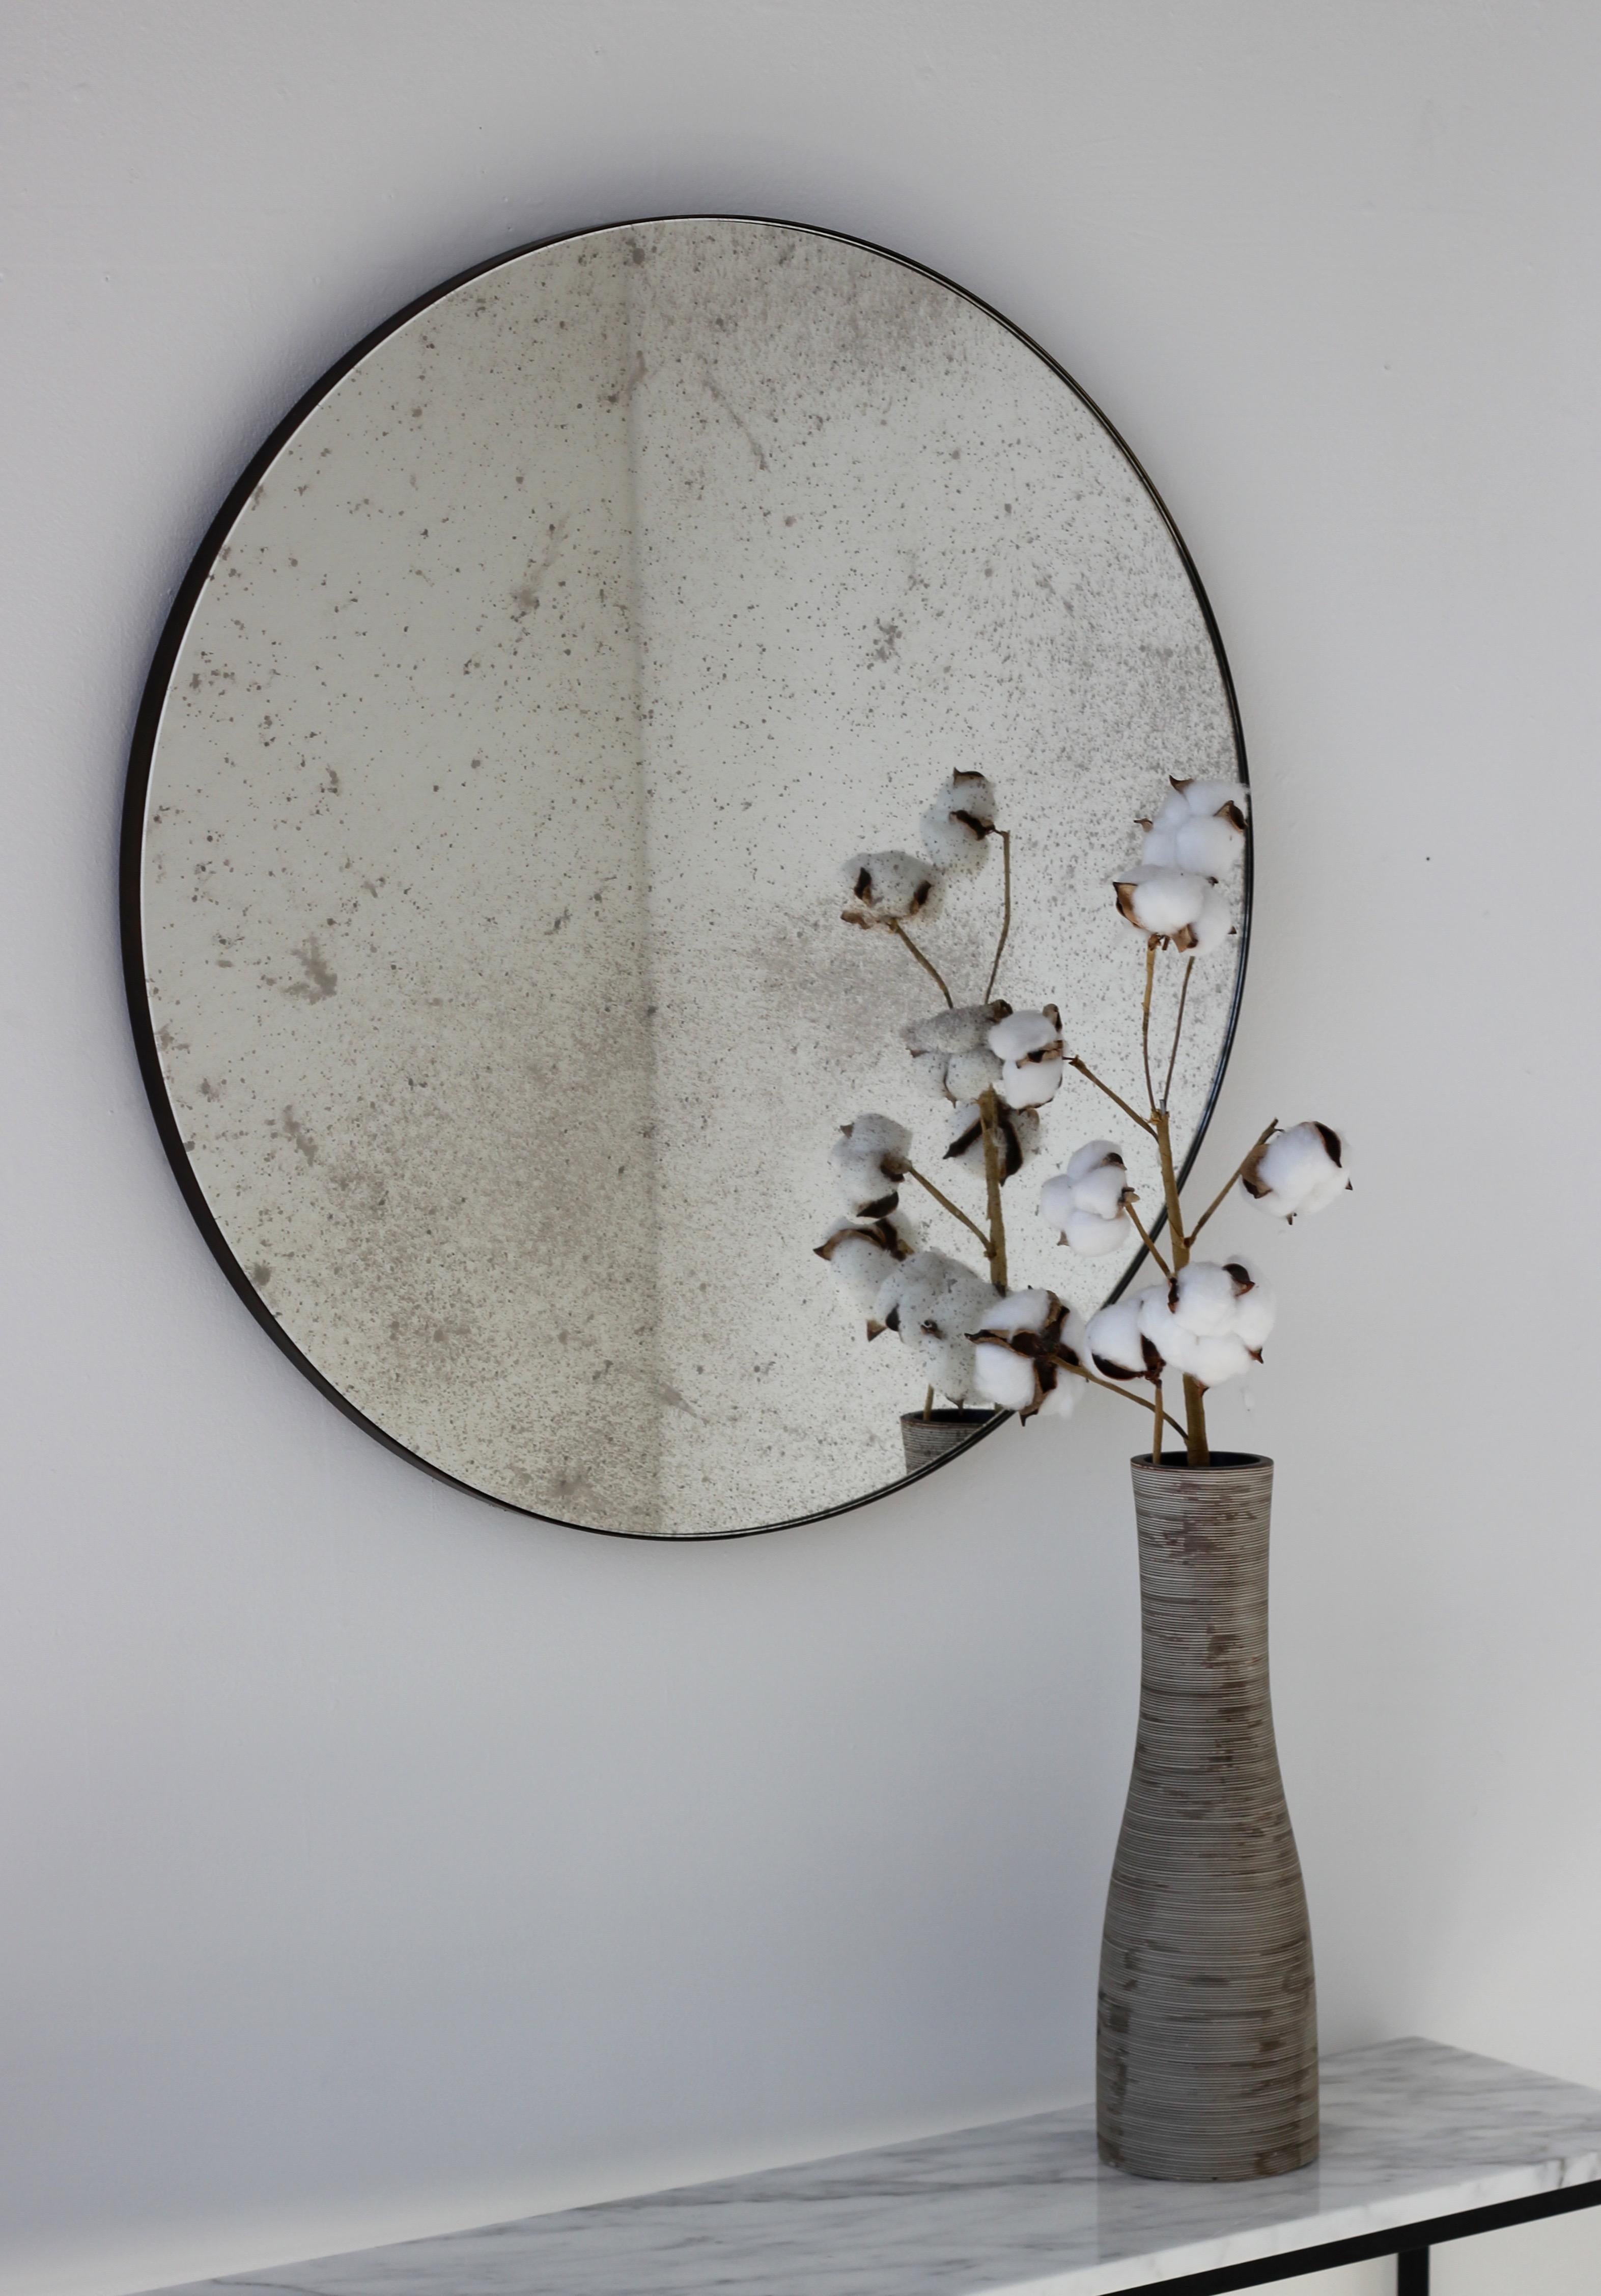 Ravissant miroir rond Orbis™ antiquité avec un cadre minimaliste en laiton patiné bronze. Conçu et fabriqué à la main à Londres, au Royaume-Uni.

Les miroirs de taille moyenne, grande et extra-large (60, 80 et 100 cm) sont équipés d'un ingénieux